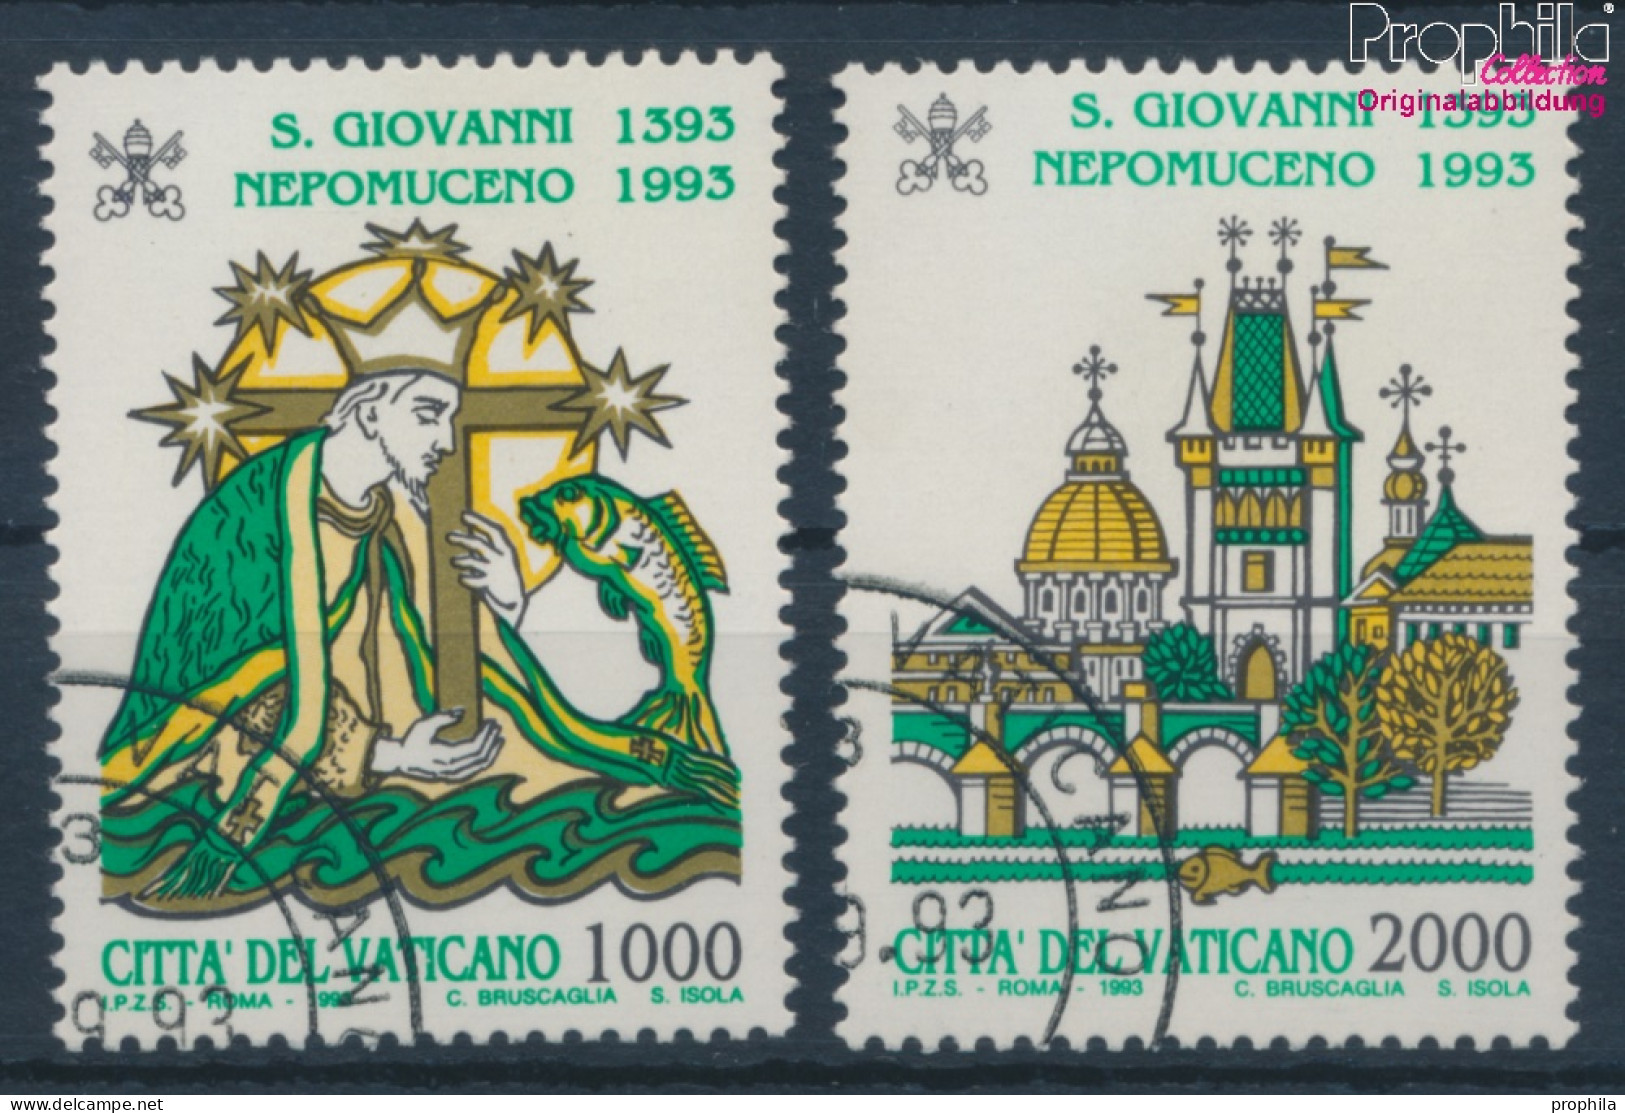 Vatikanstadt 1097-1098 (kompl.Ausgabe) Gestempelt 1993 Johannes Von Nepomuk (10352246 - Used Stamps